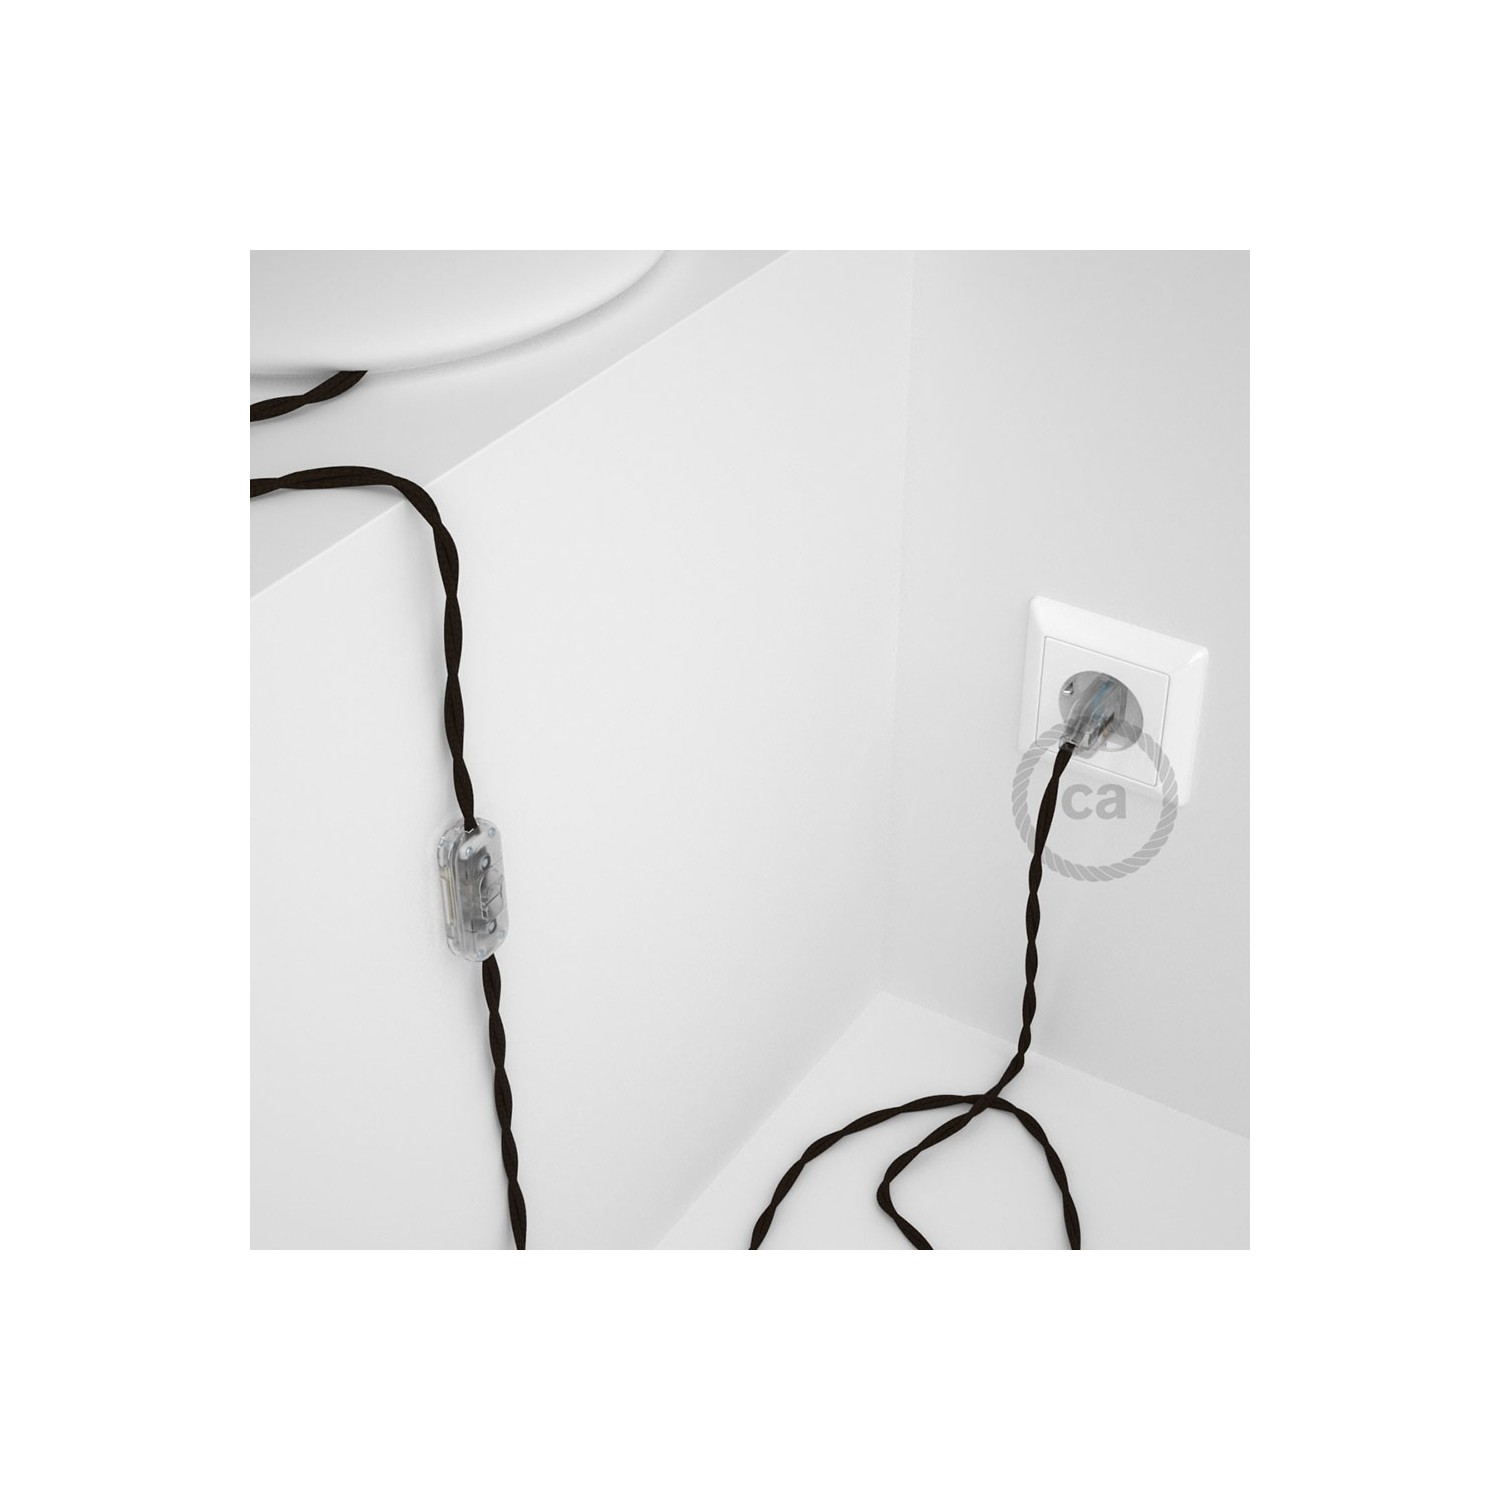 Cordon pour lampe, câble TM13 Effet Soie Marron 1,80 m. Choisissez la couleur de la fiche et de l'interrupteur!